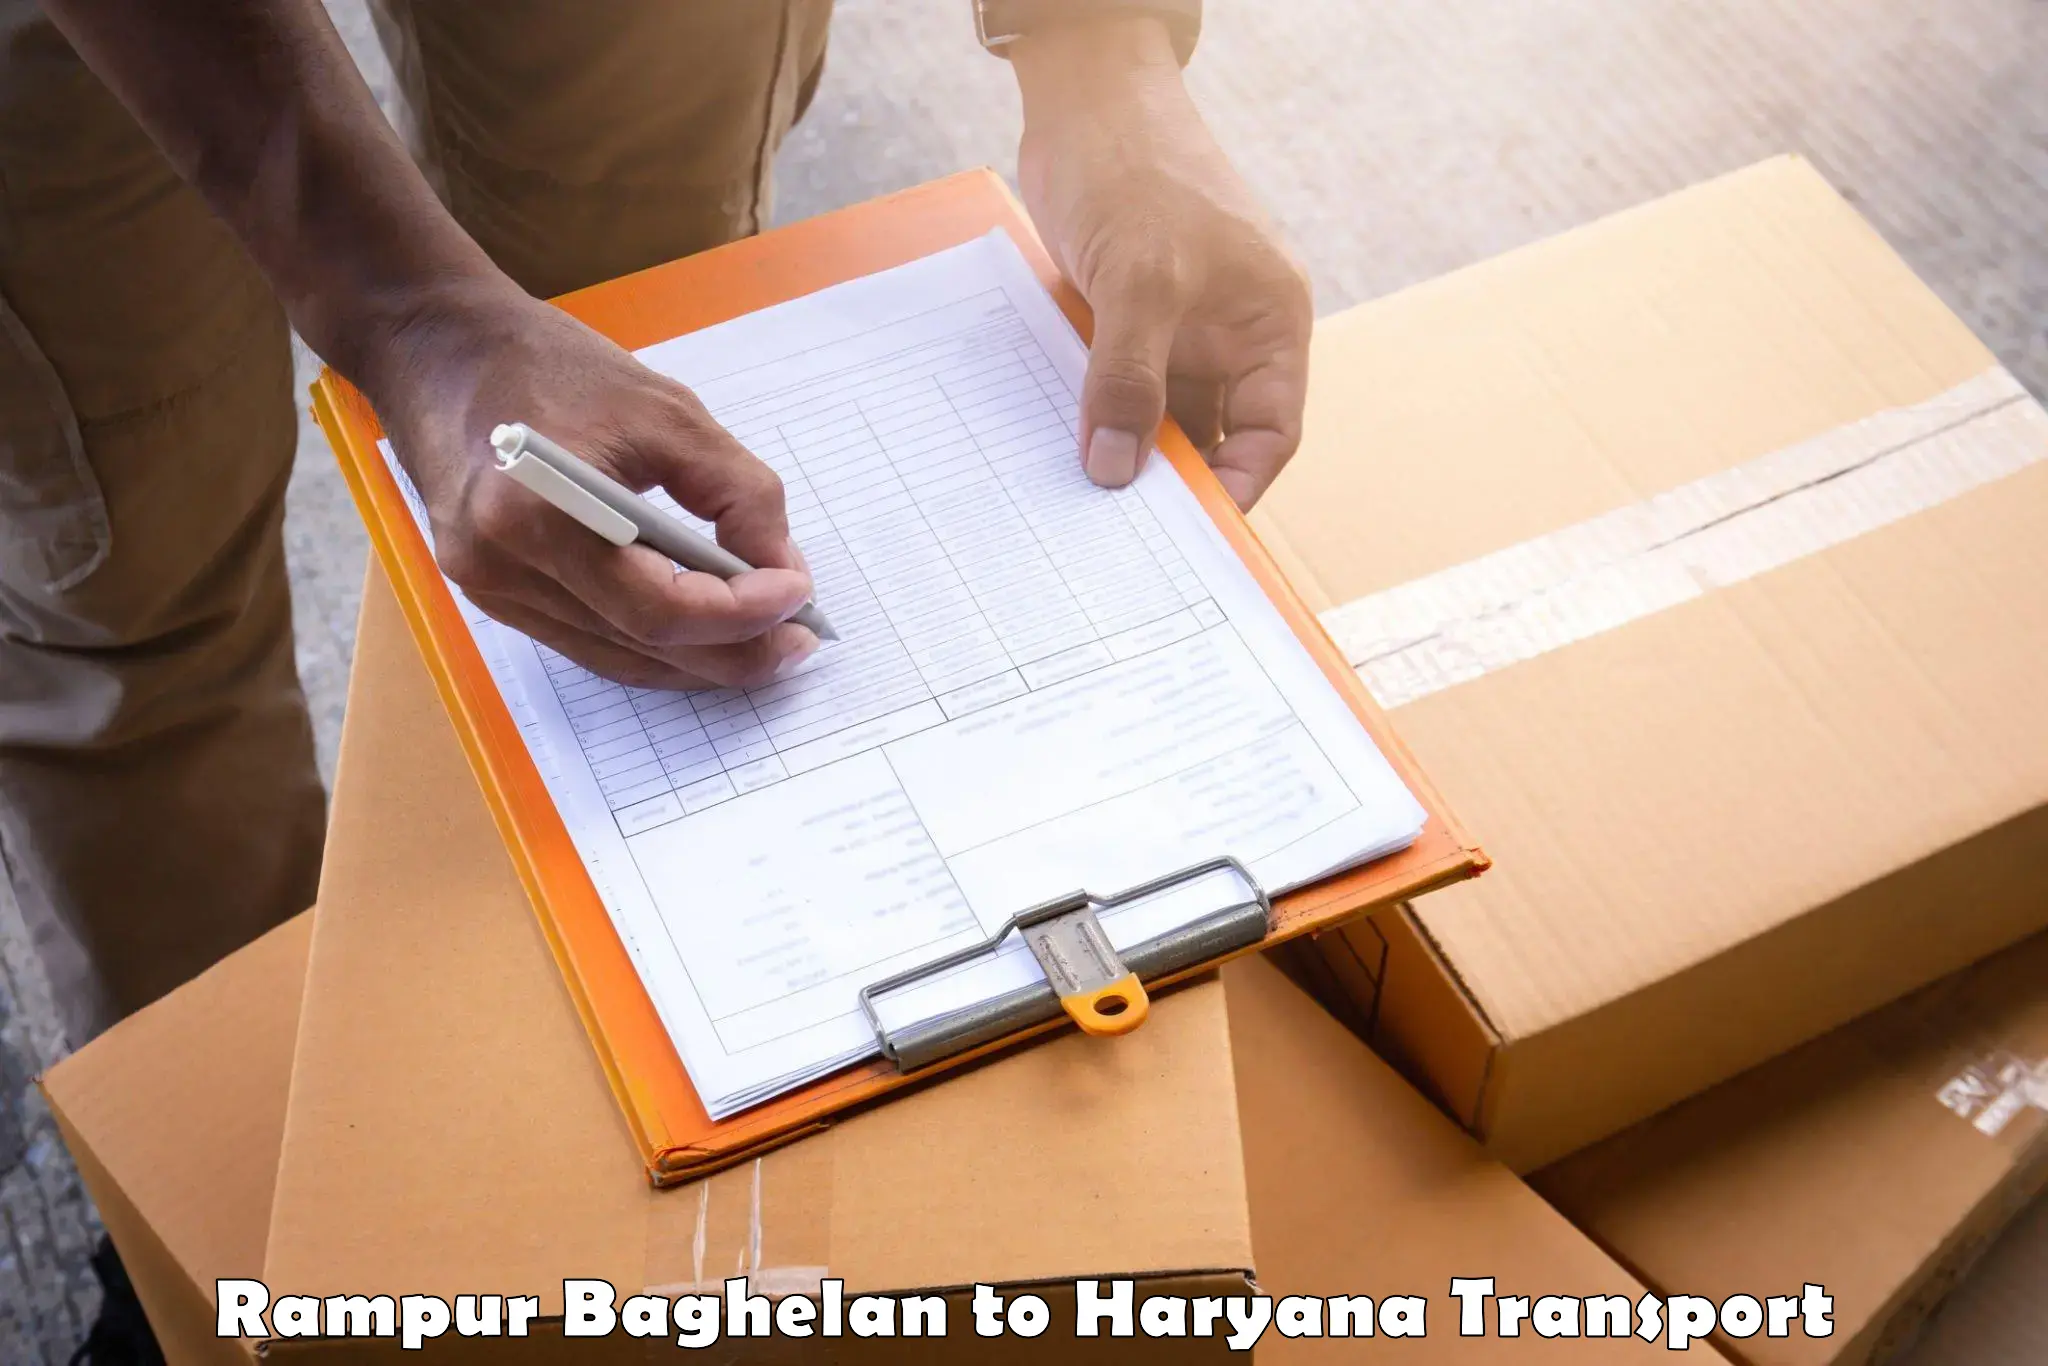 Transport in sharing Rampur Baghelan to Kurukshetra University